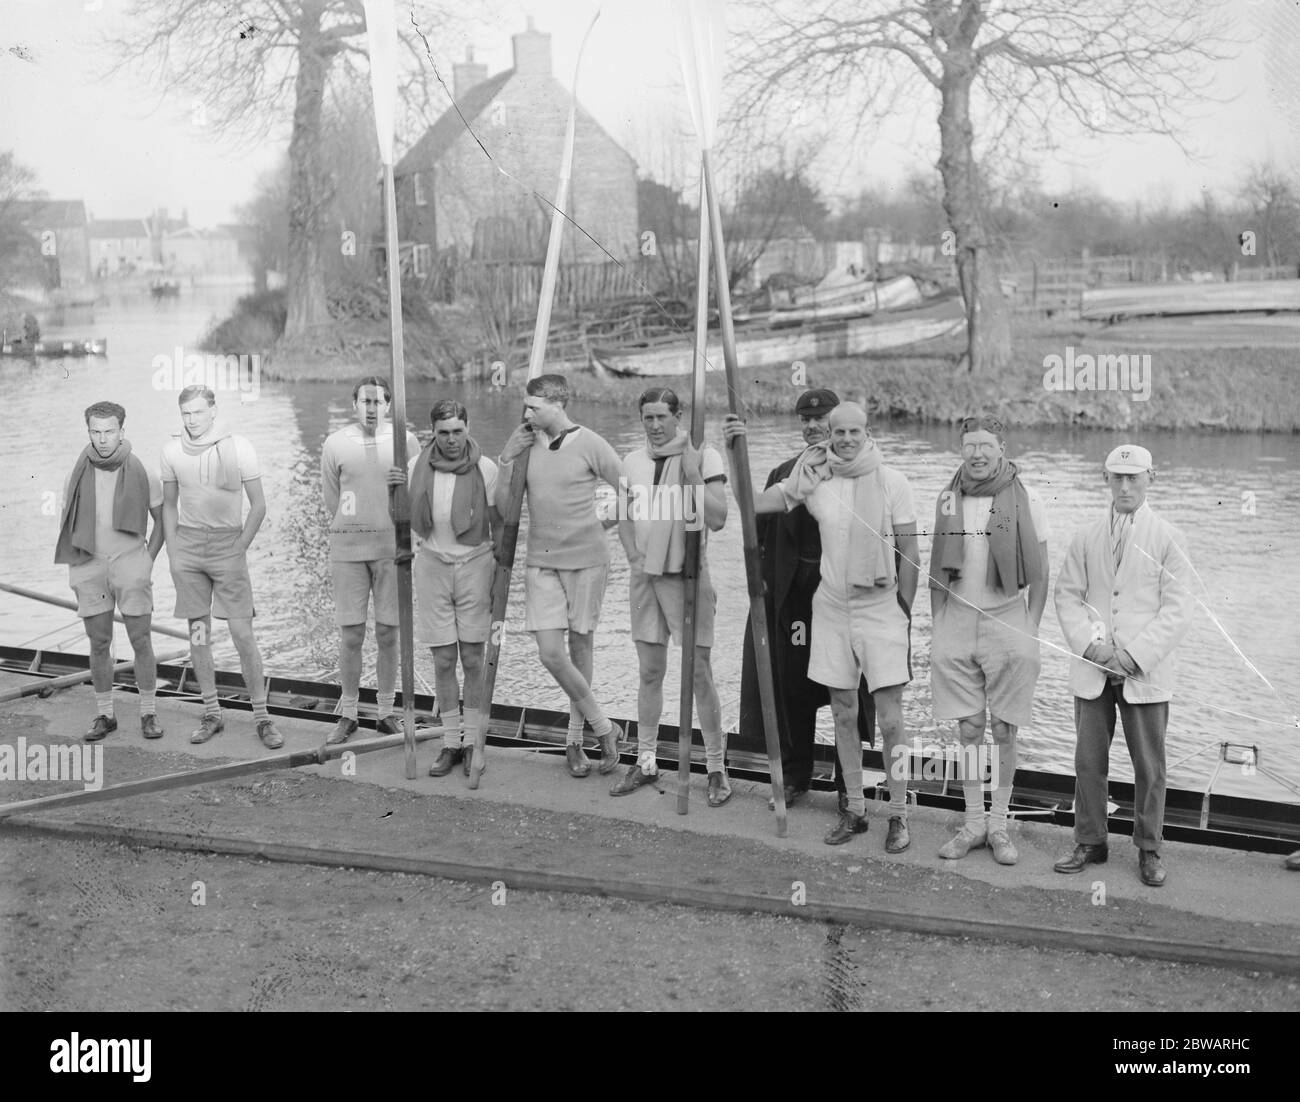 Light Blues va dans l'entraînement dur à Ely l'équipage avant de sortir . Le quatrième de gauche est M. Fairburn, le célèbre entraîneur 18 février 1920 Banque D'Images